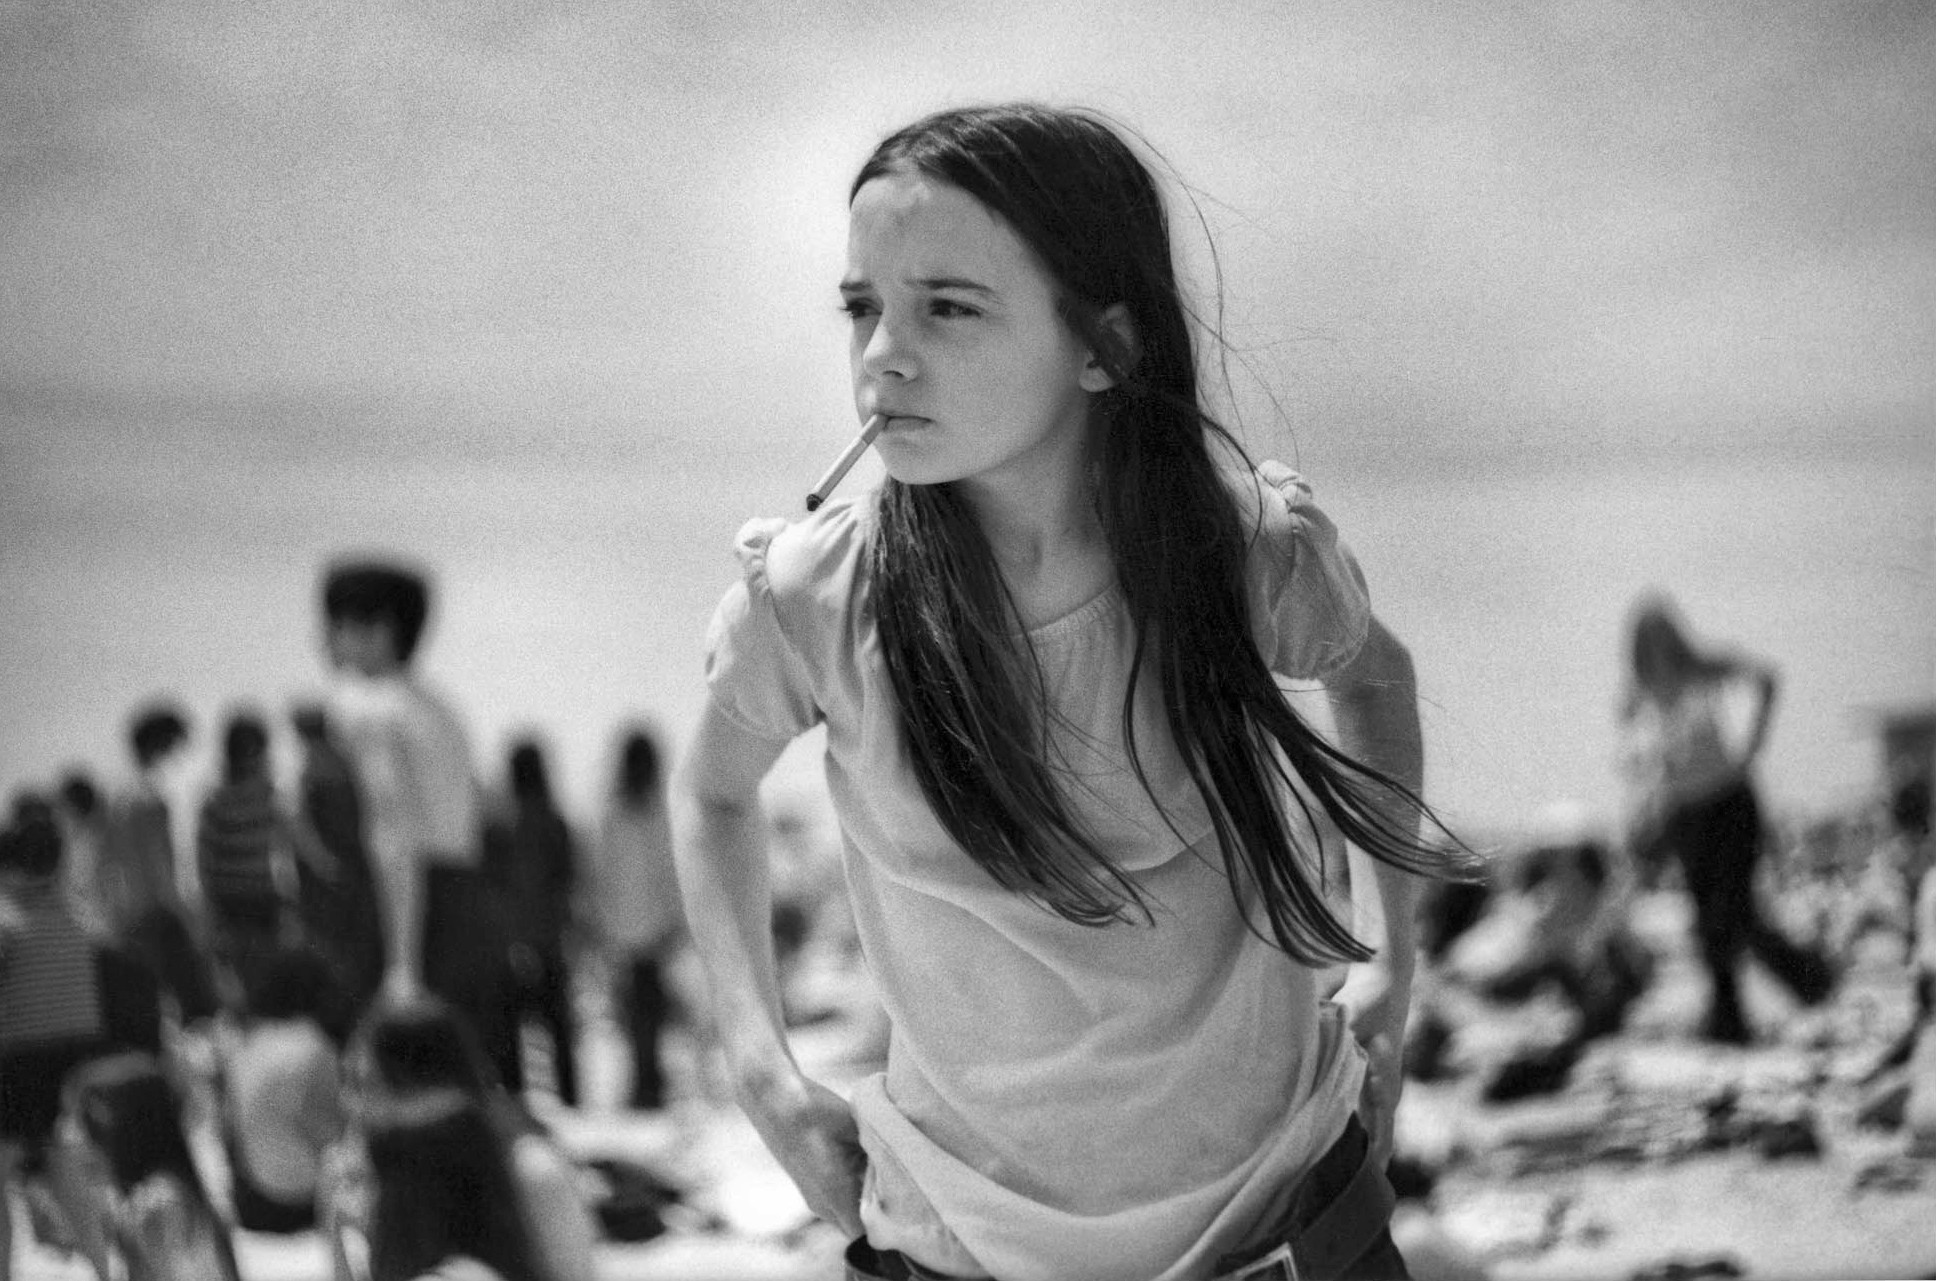 Priscilla, a young girl smoking a cigarette on Jones Beach, New York